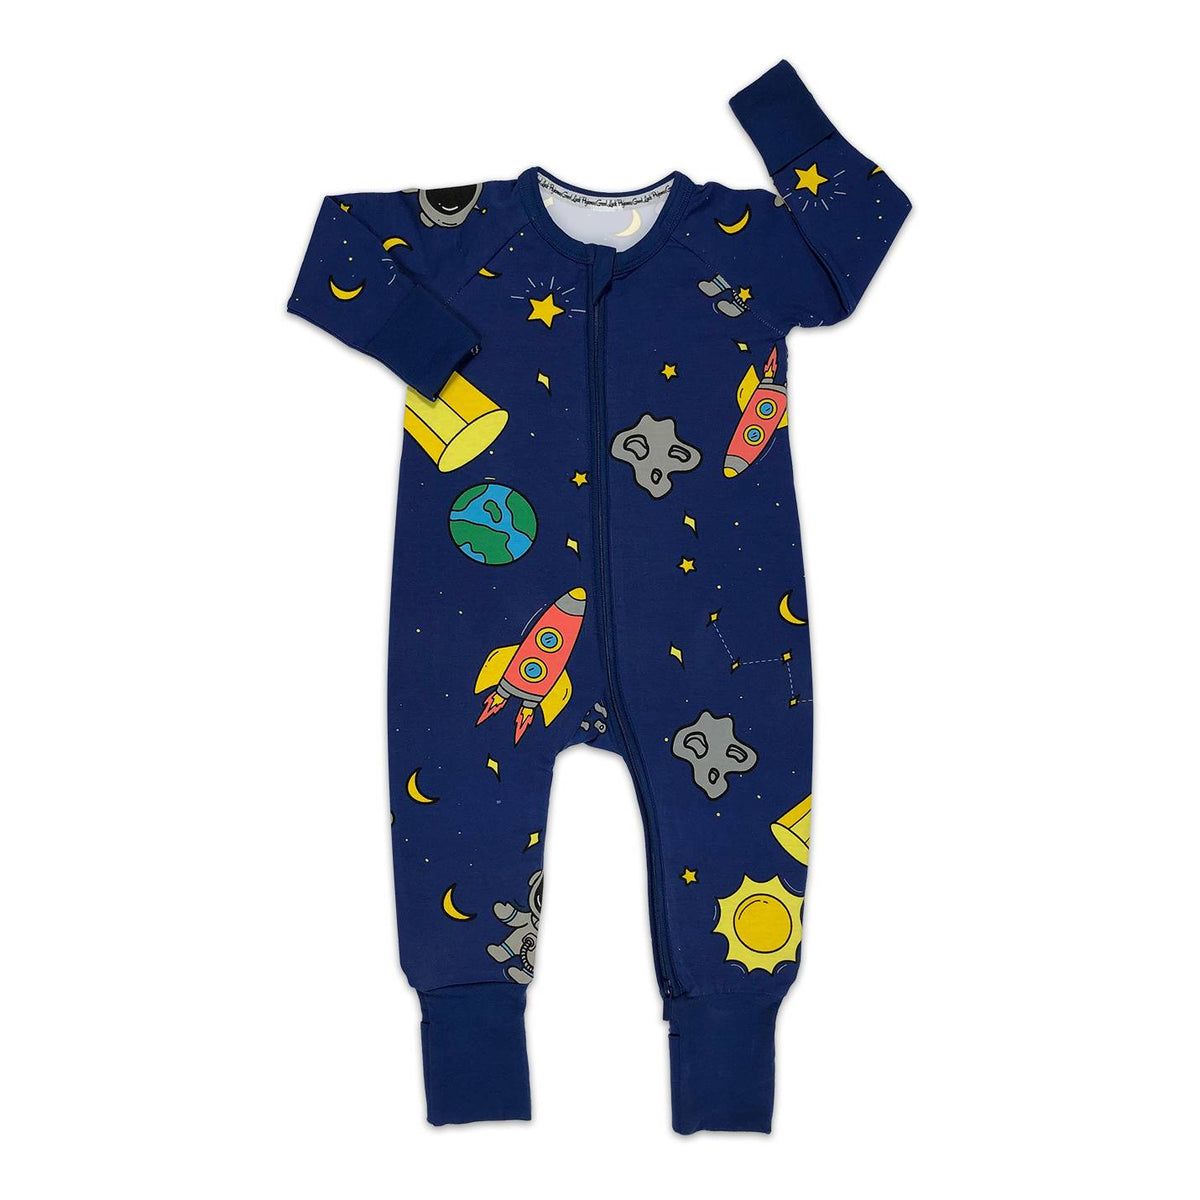 Space Baby Pajamas